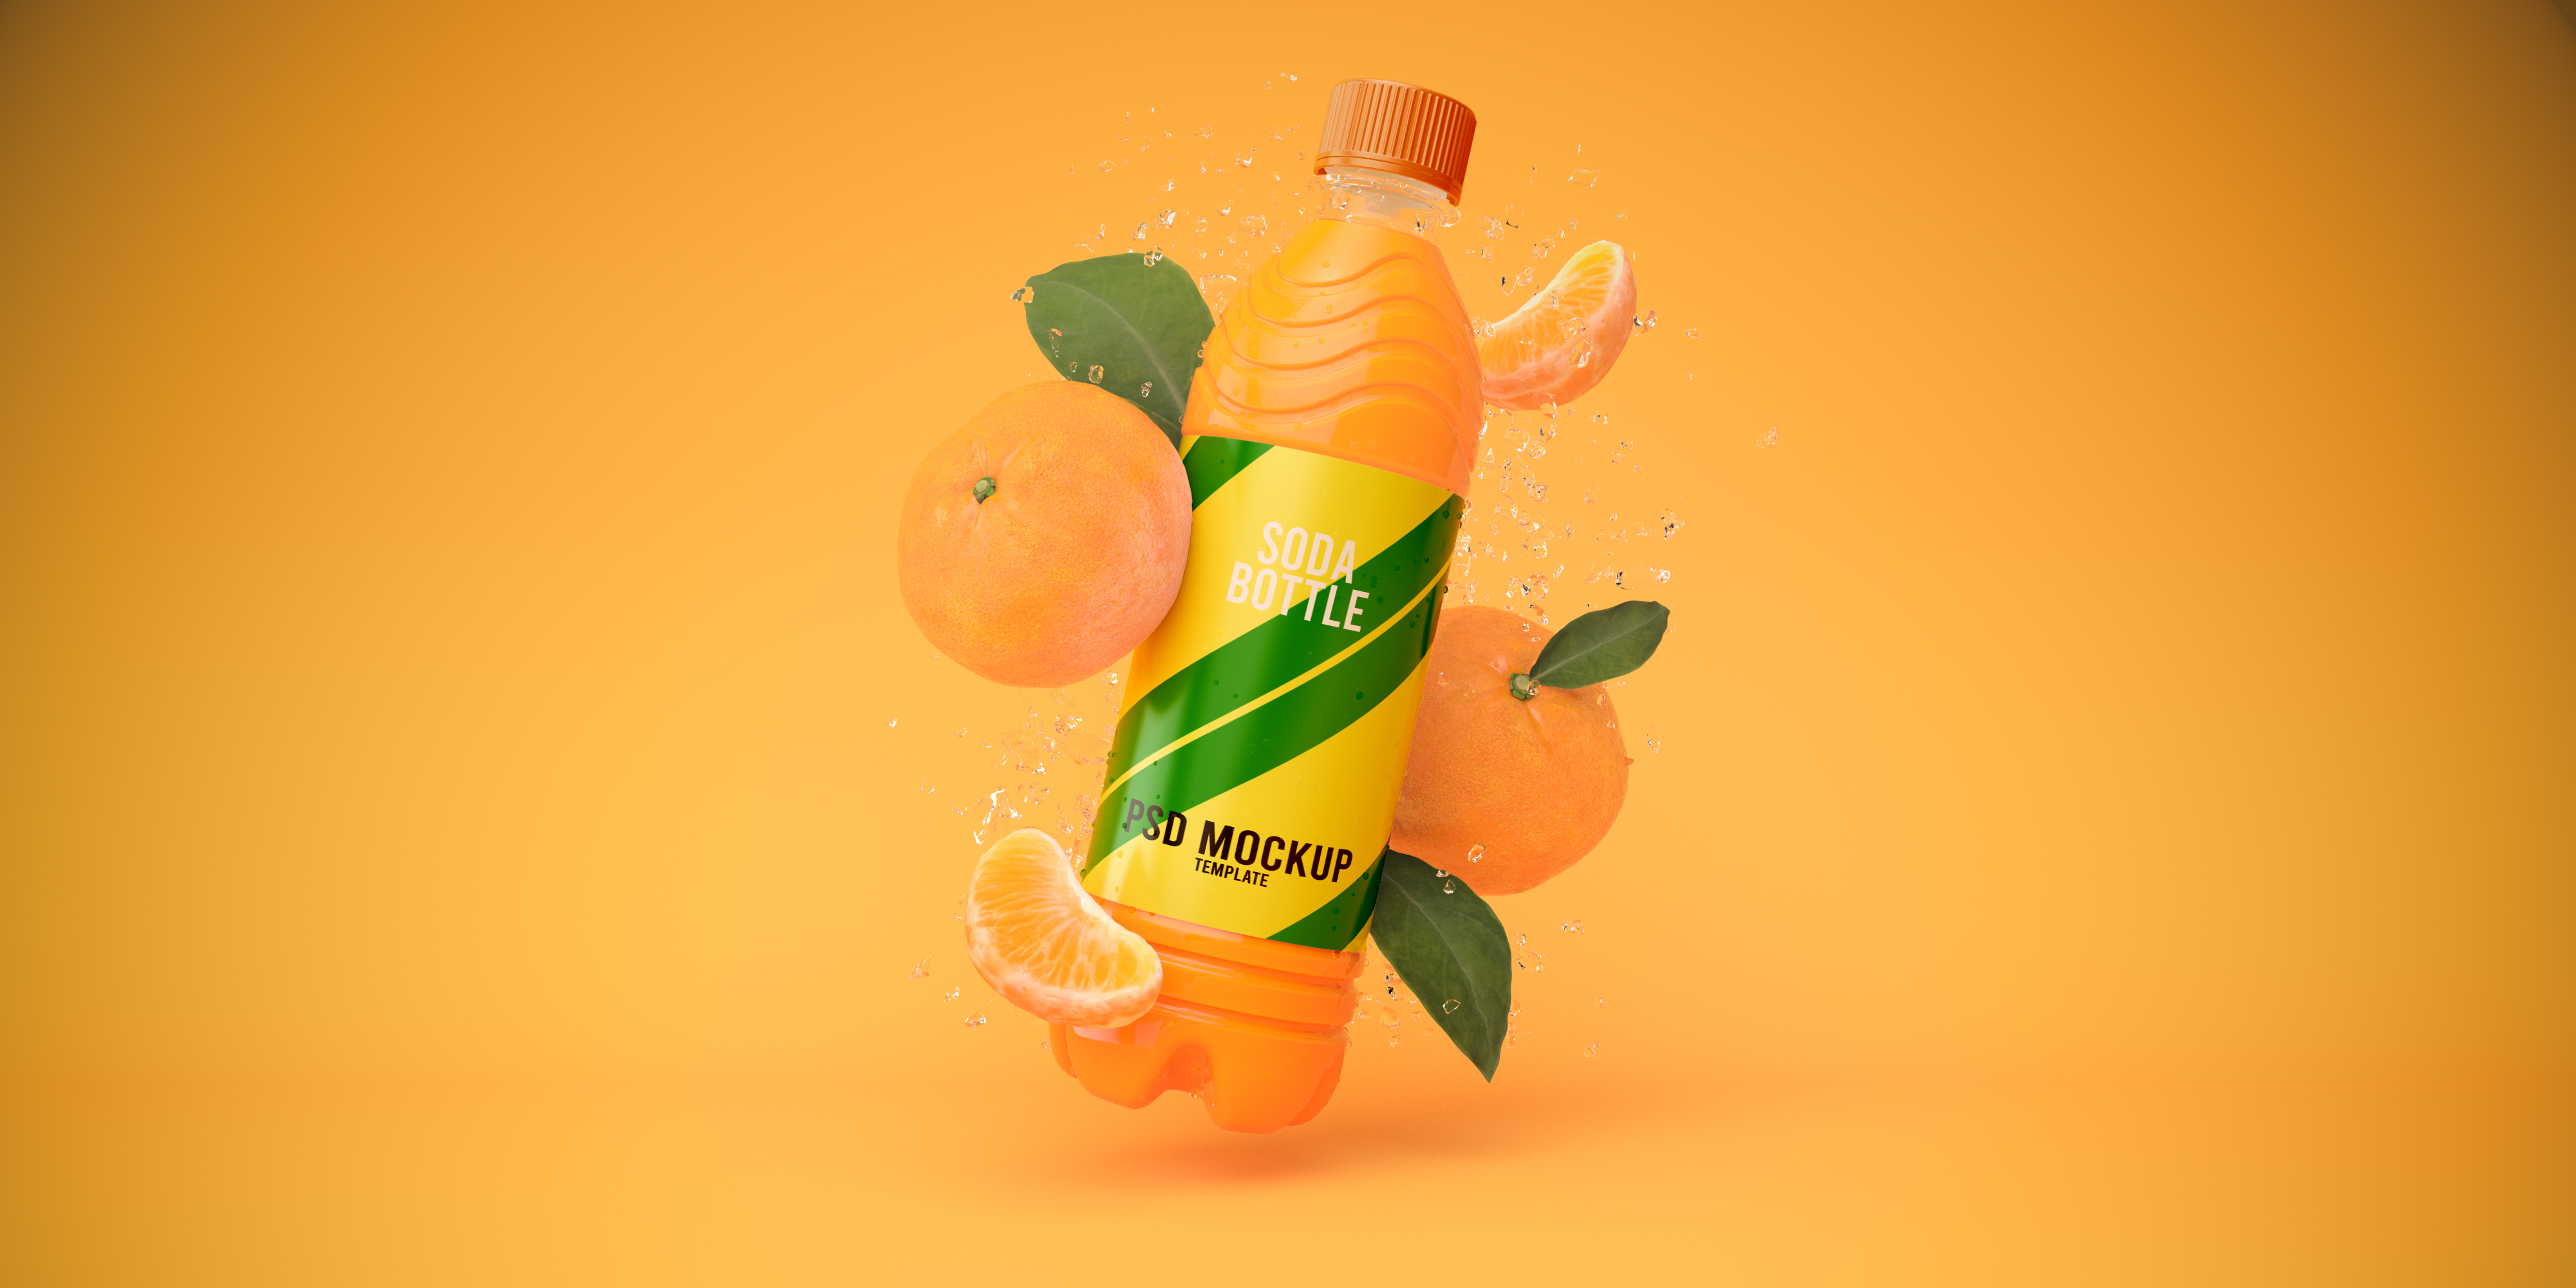 Мандарин макет бутылки содовой на оранжевом фоне 3D визуализации